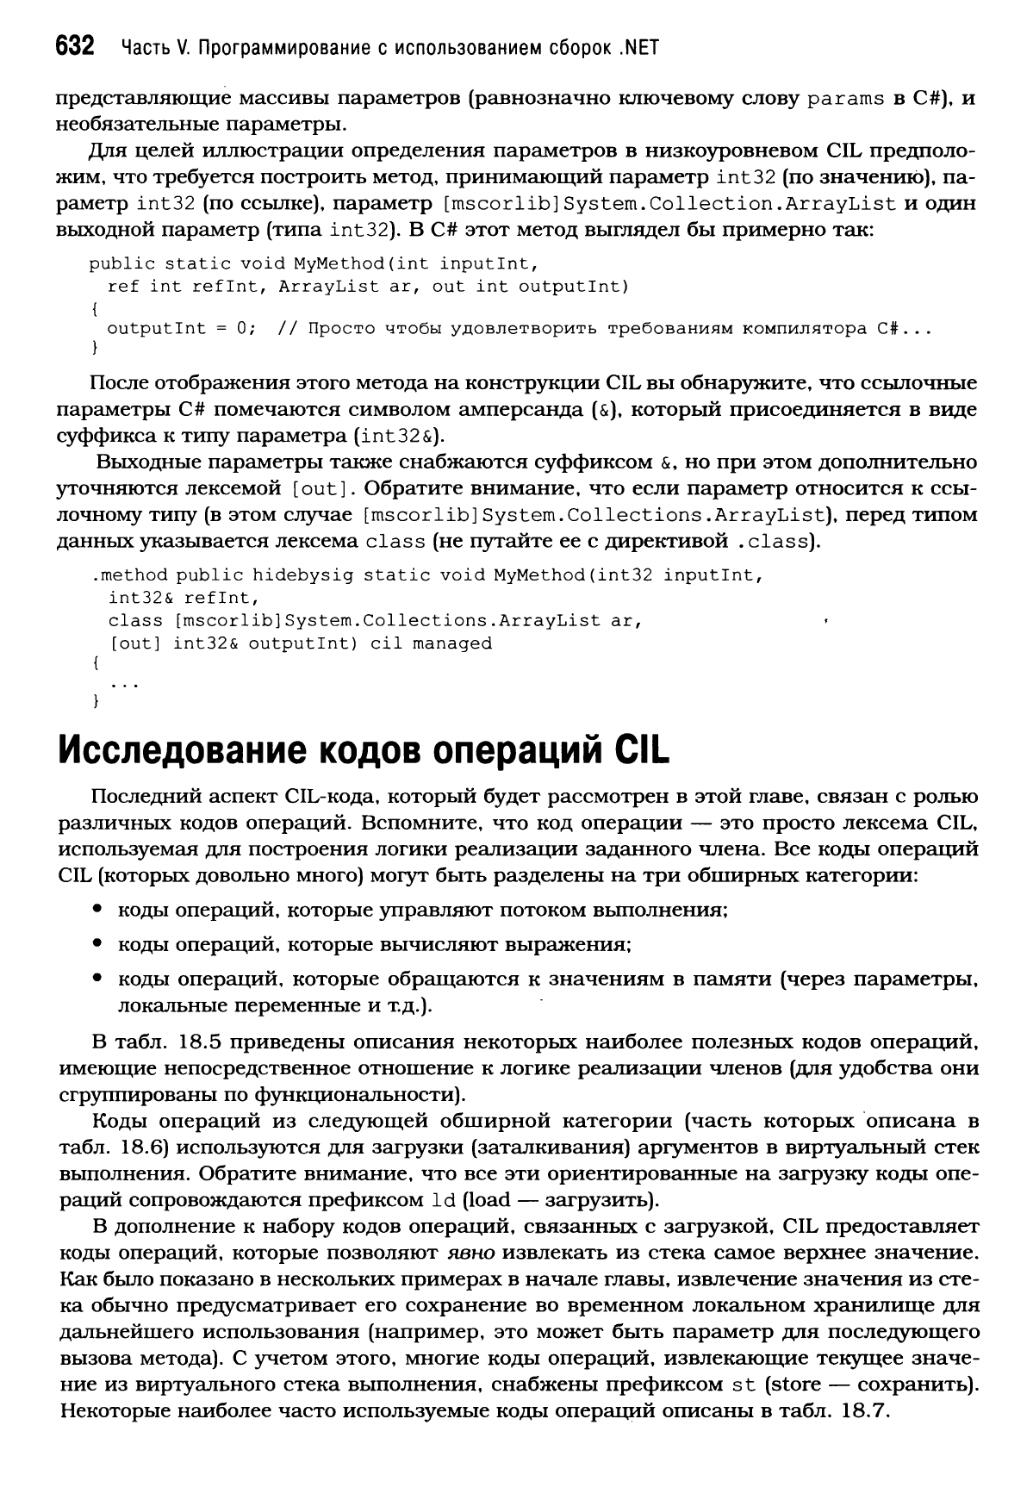 Исследование кодов операций CIL